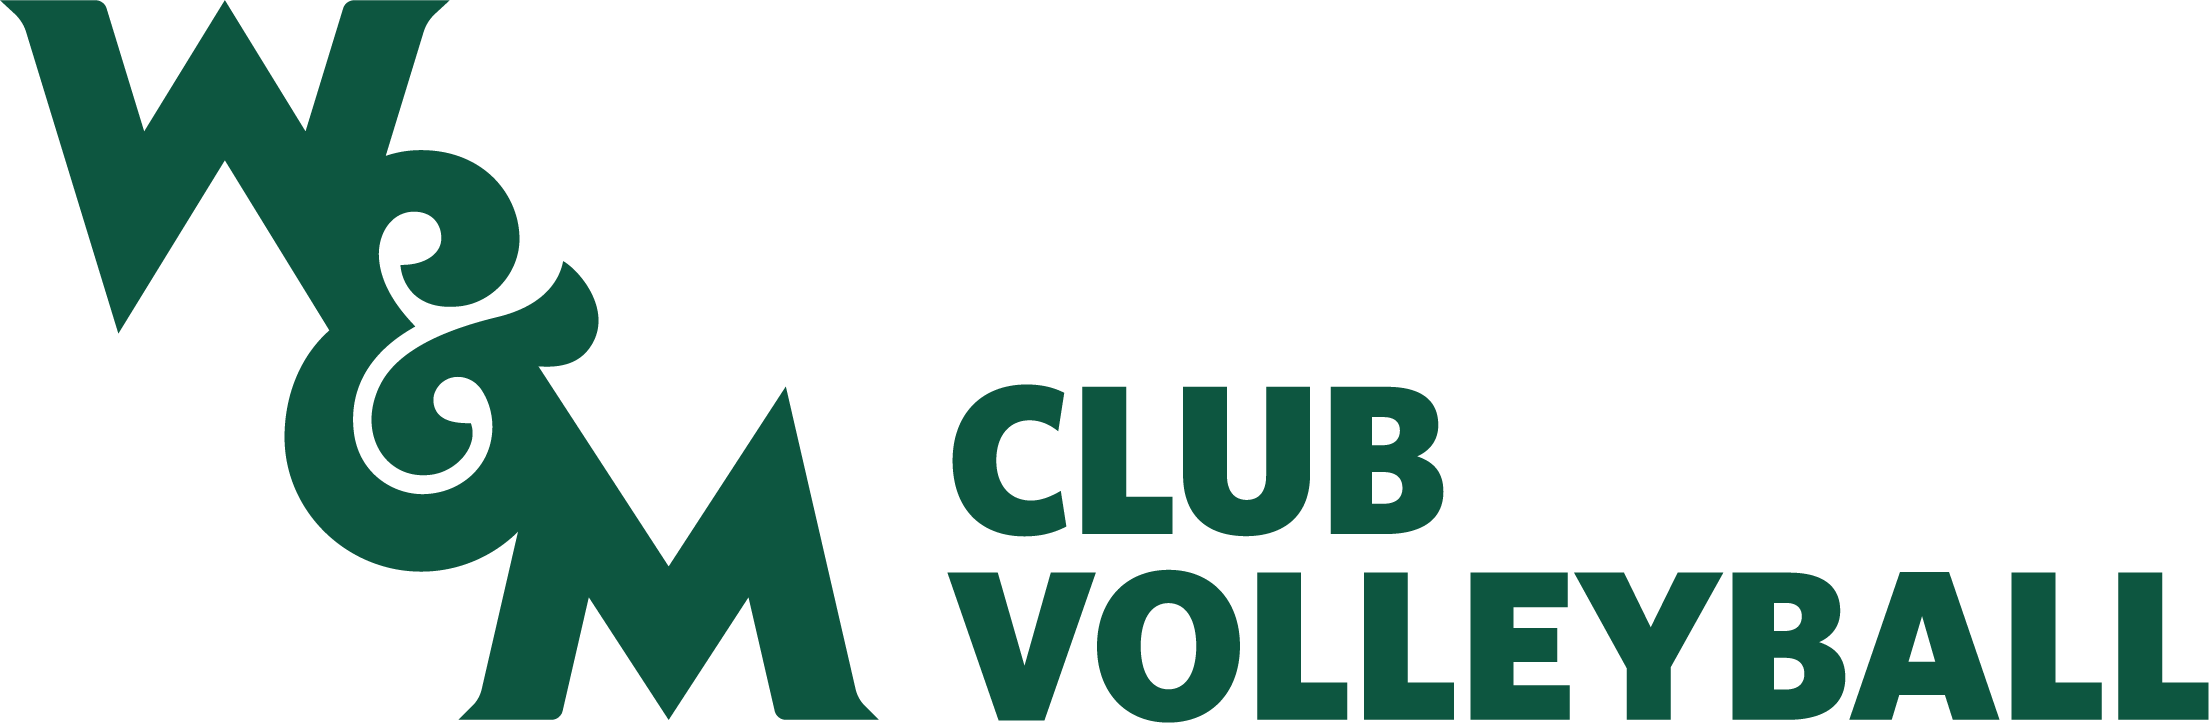 Volleyball Club Logo